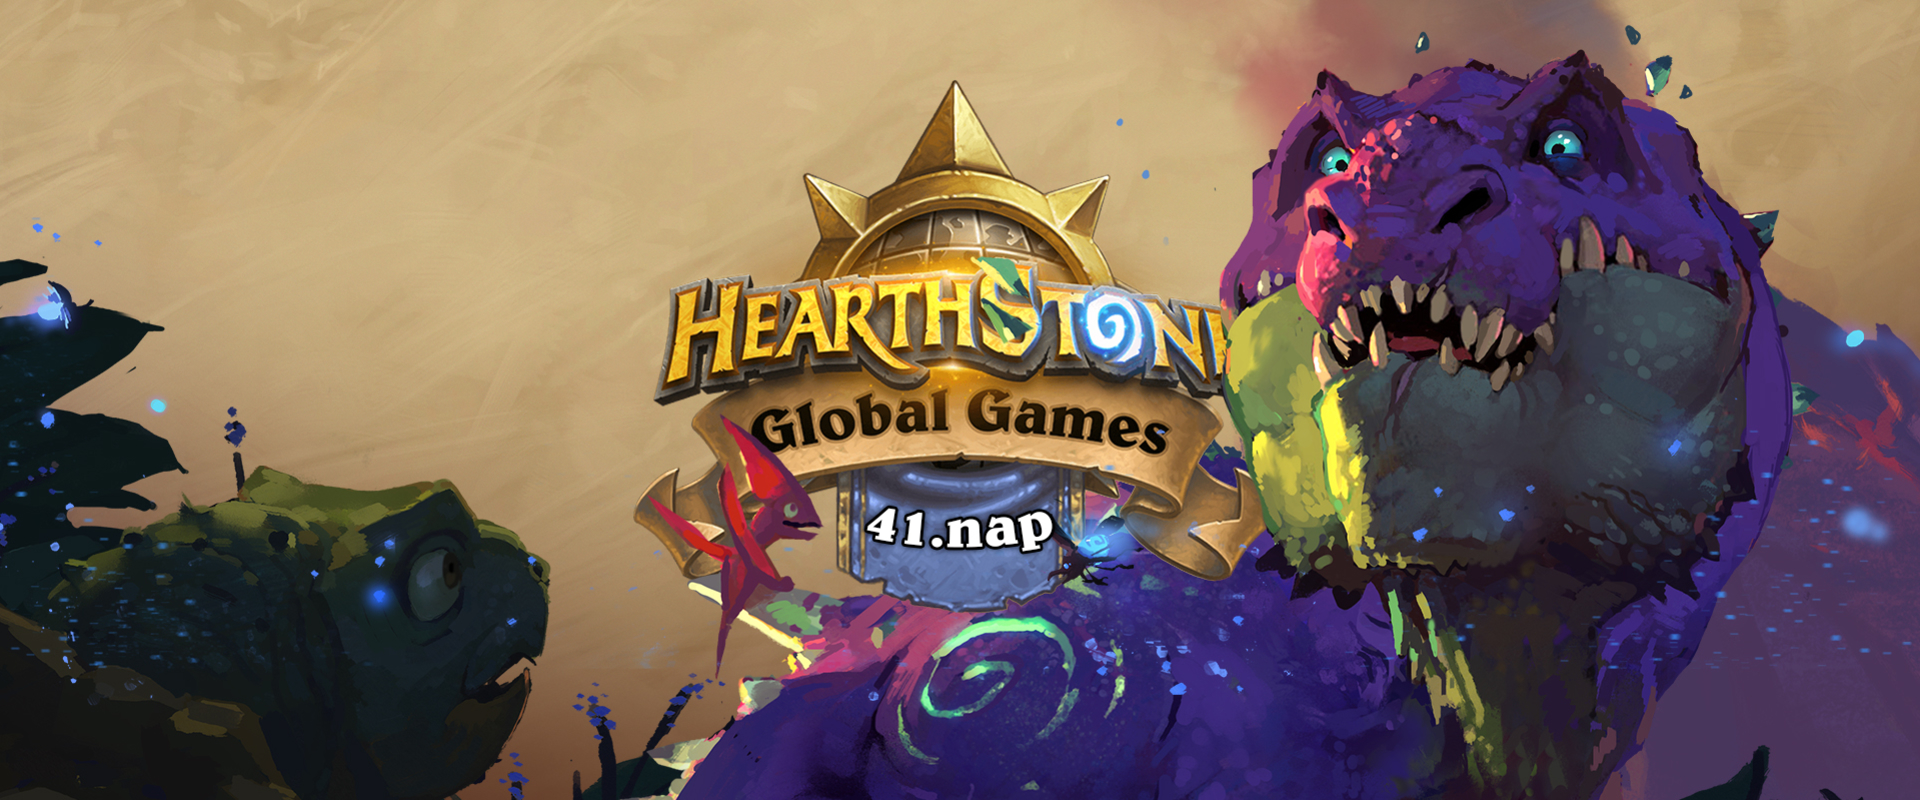 Ez történt a Hearthstone Global Games 41. napján